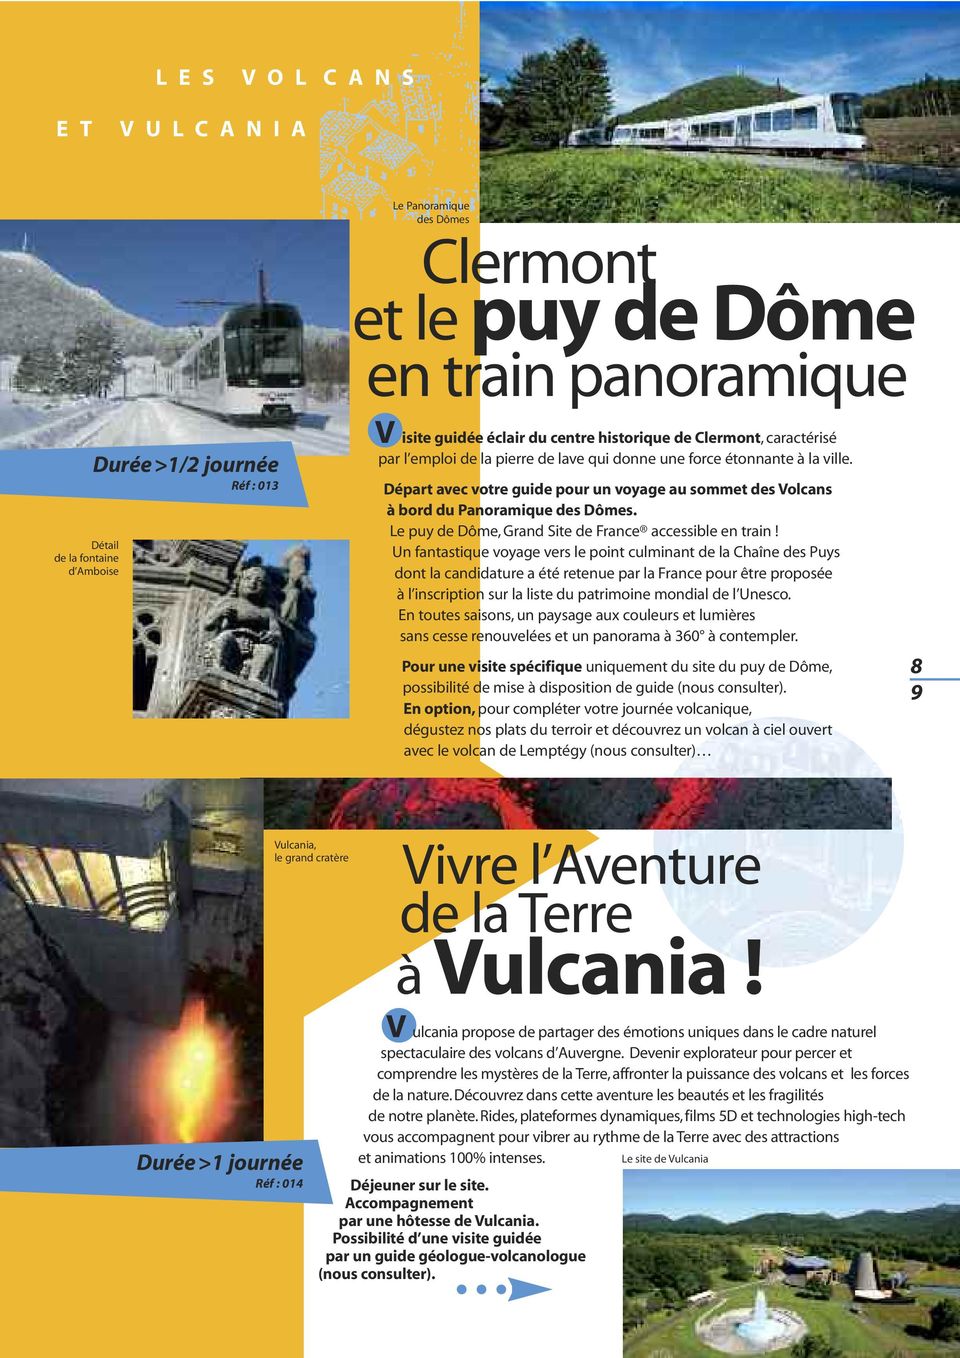 Départ avec votre guide pour un voyage au sommet des Volcans à bord du Panoramique des Dômes. Le puy de Dôme, Grand Site de France accessible en train!